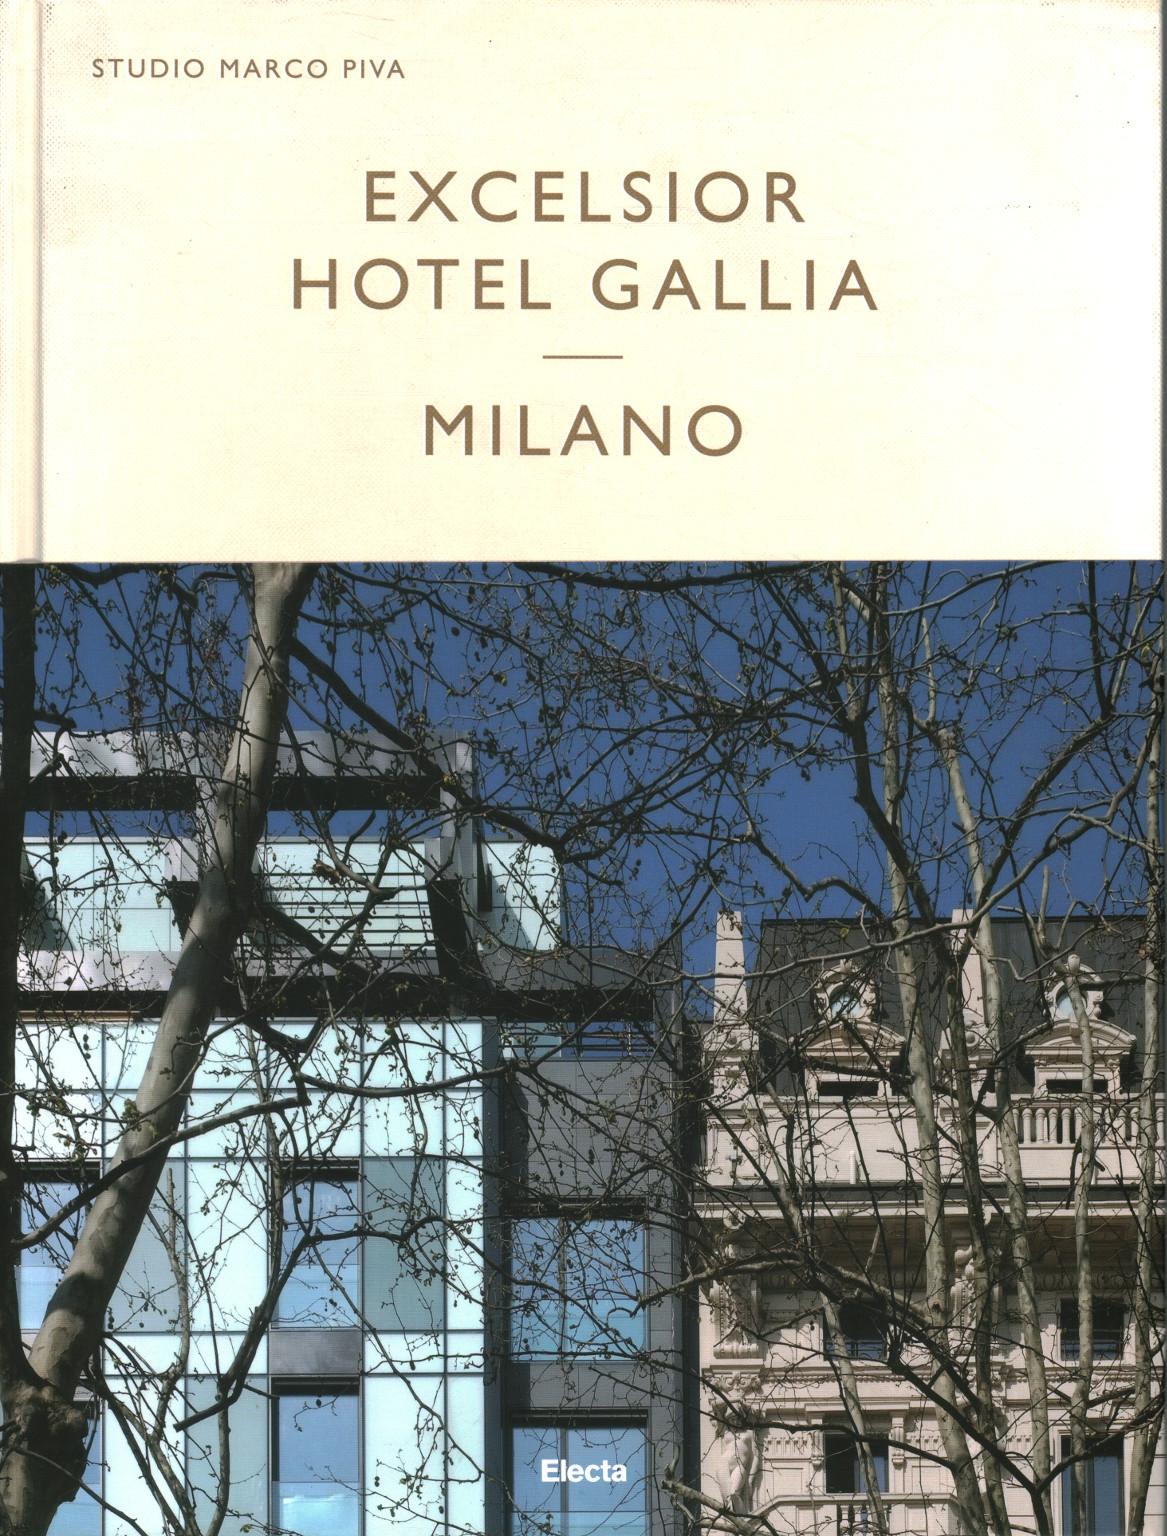 Excelsior Hotel Gallia Milano, s.a.